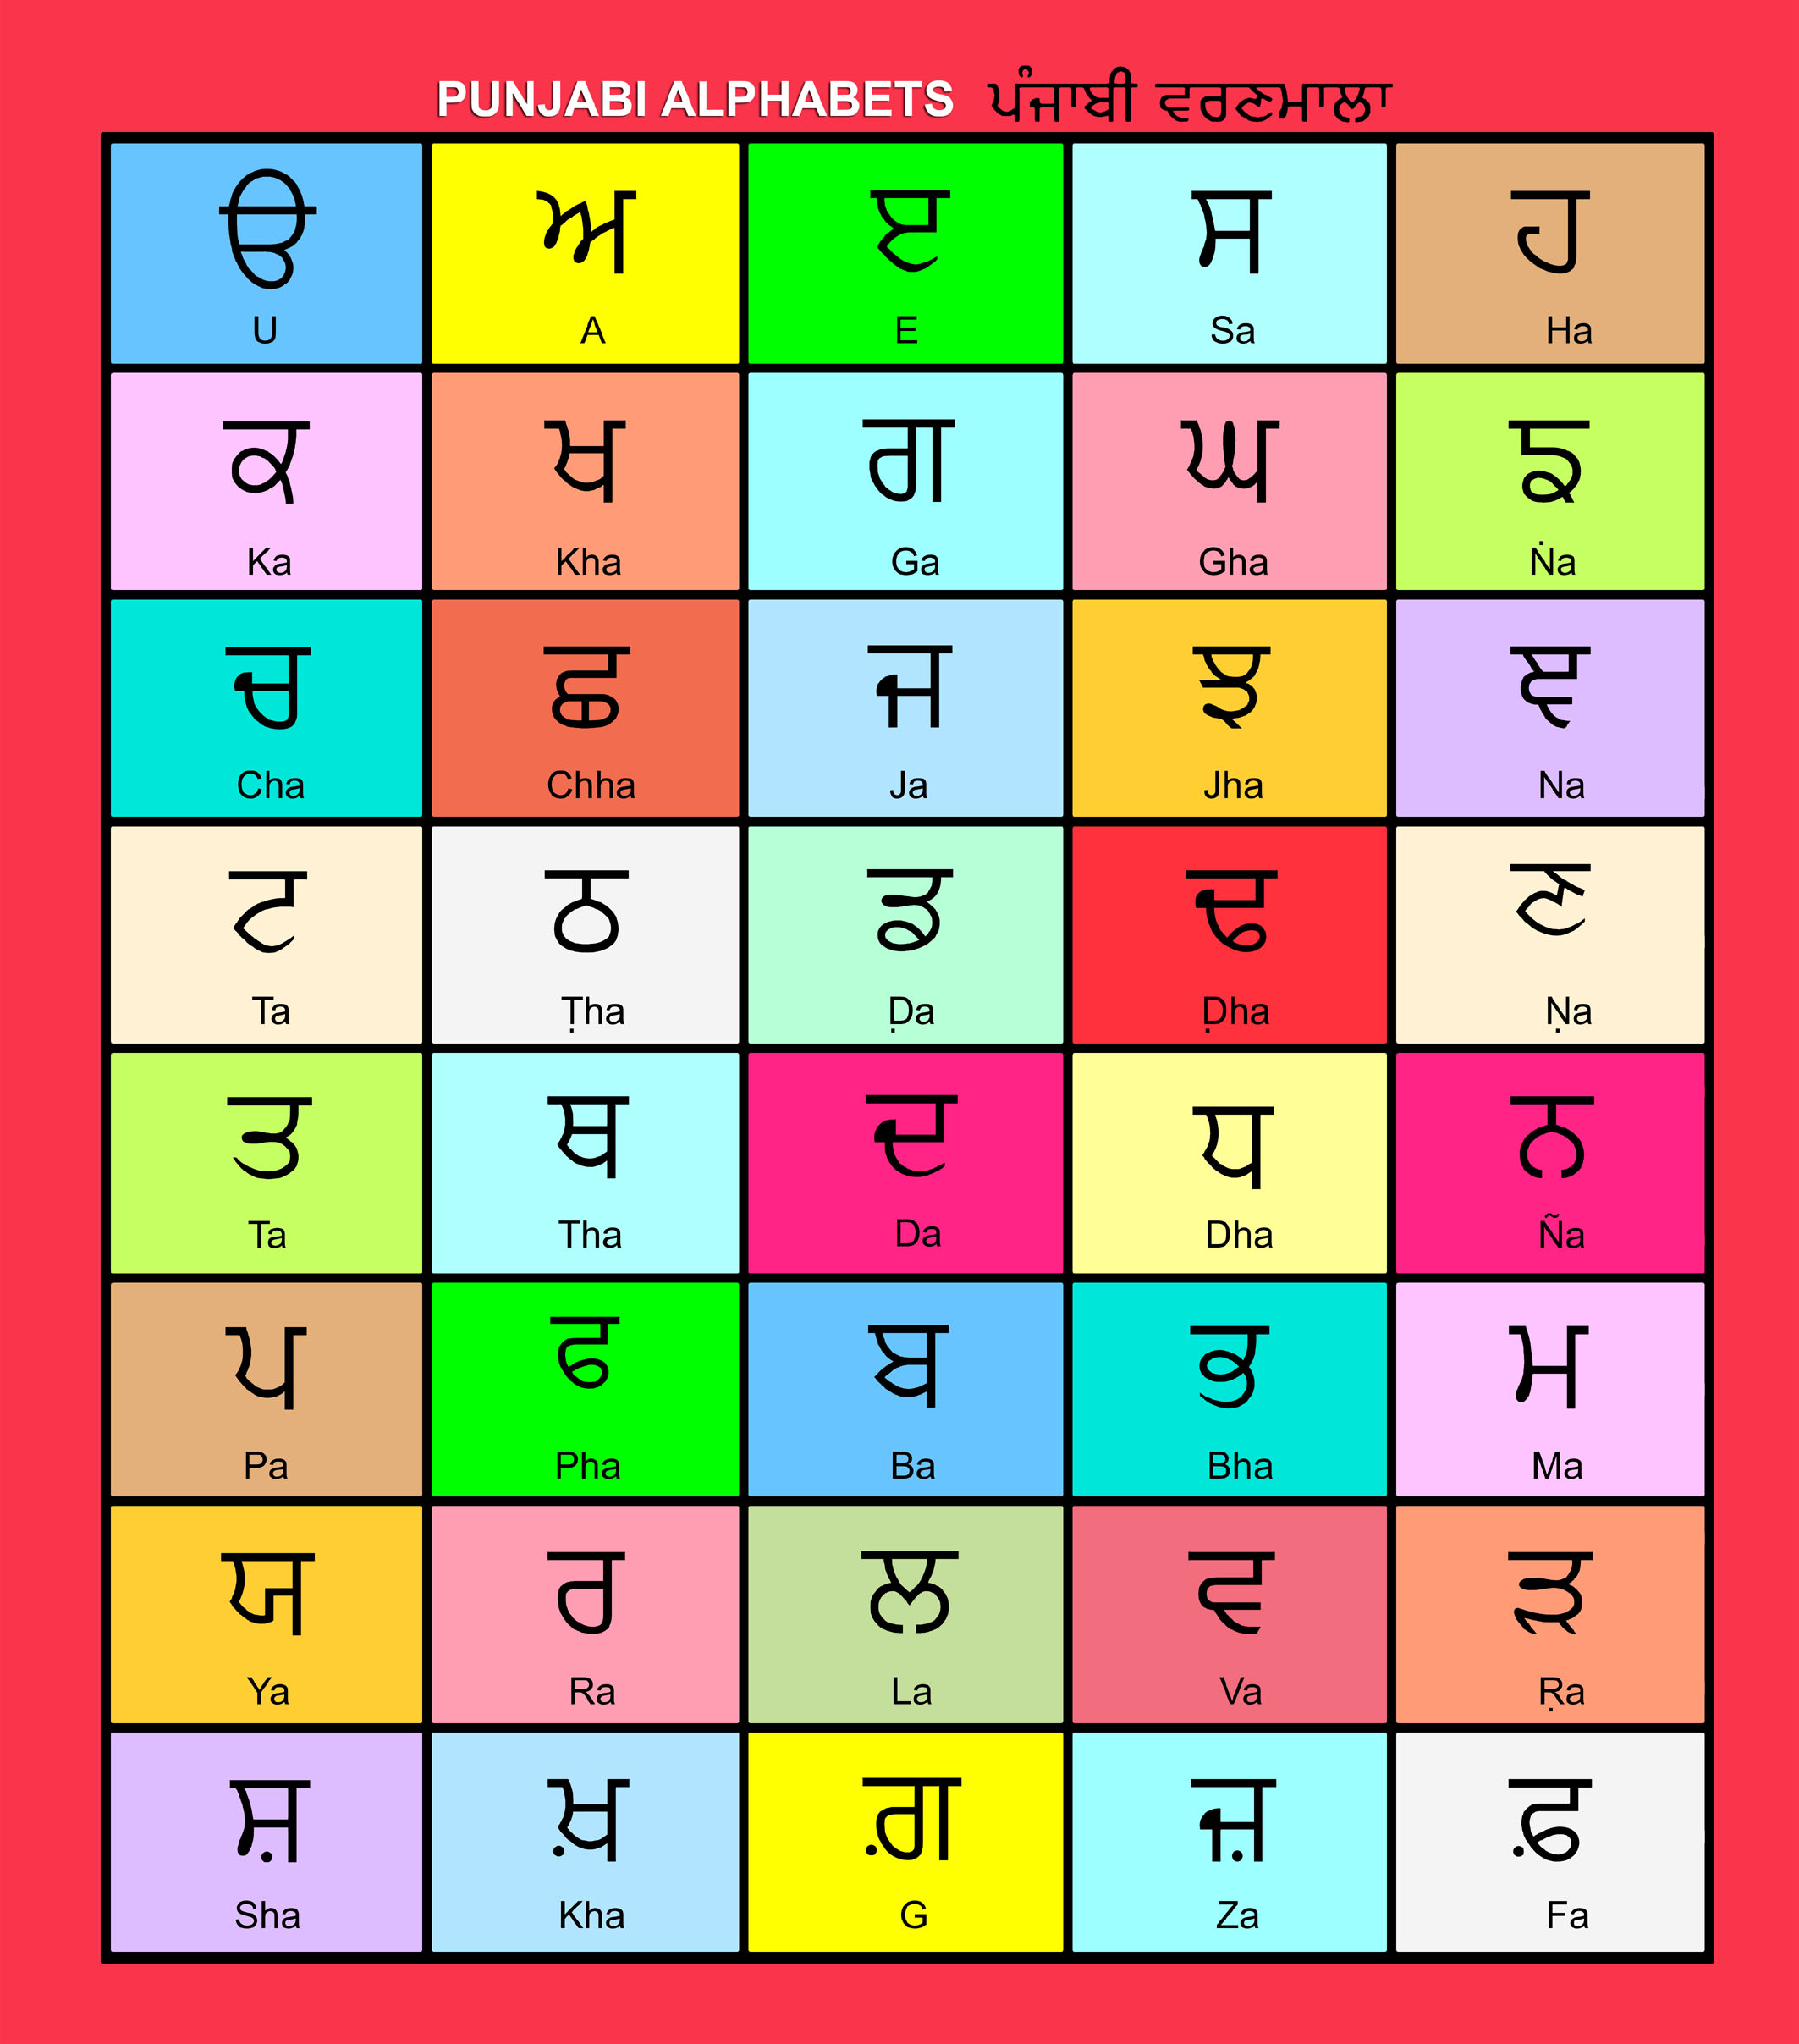 Punjabi alphabet chart. Gurmukhi Alphabet chart